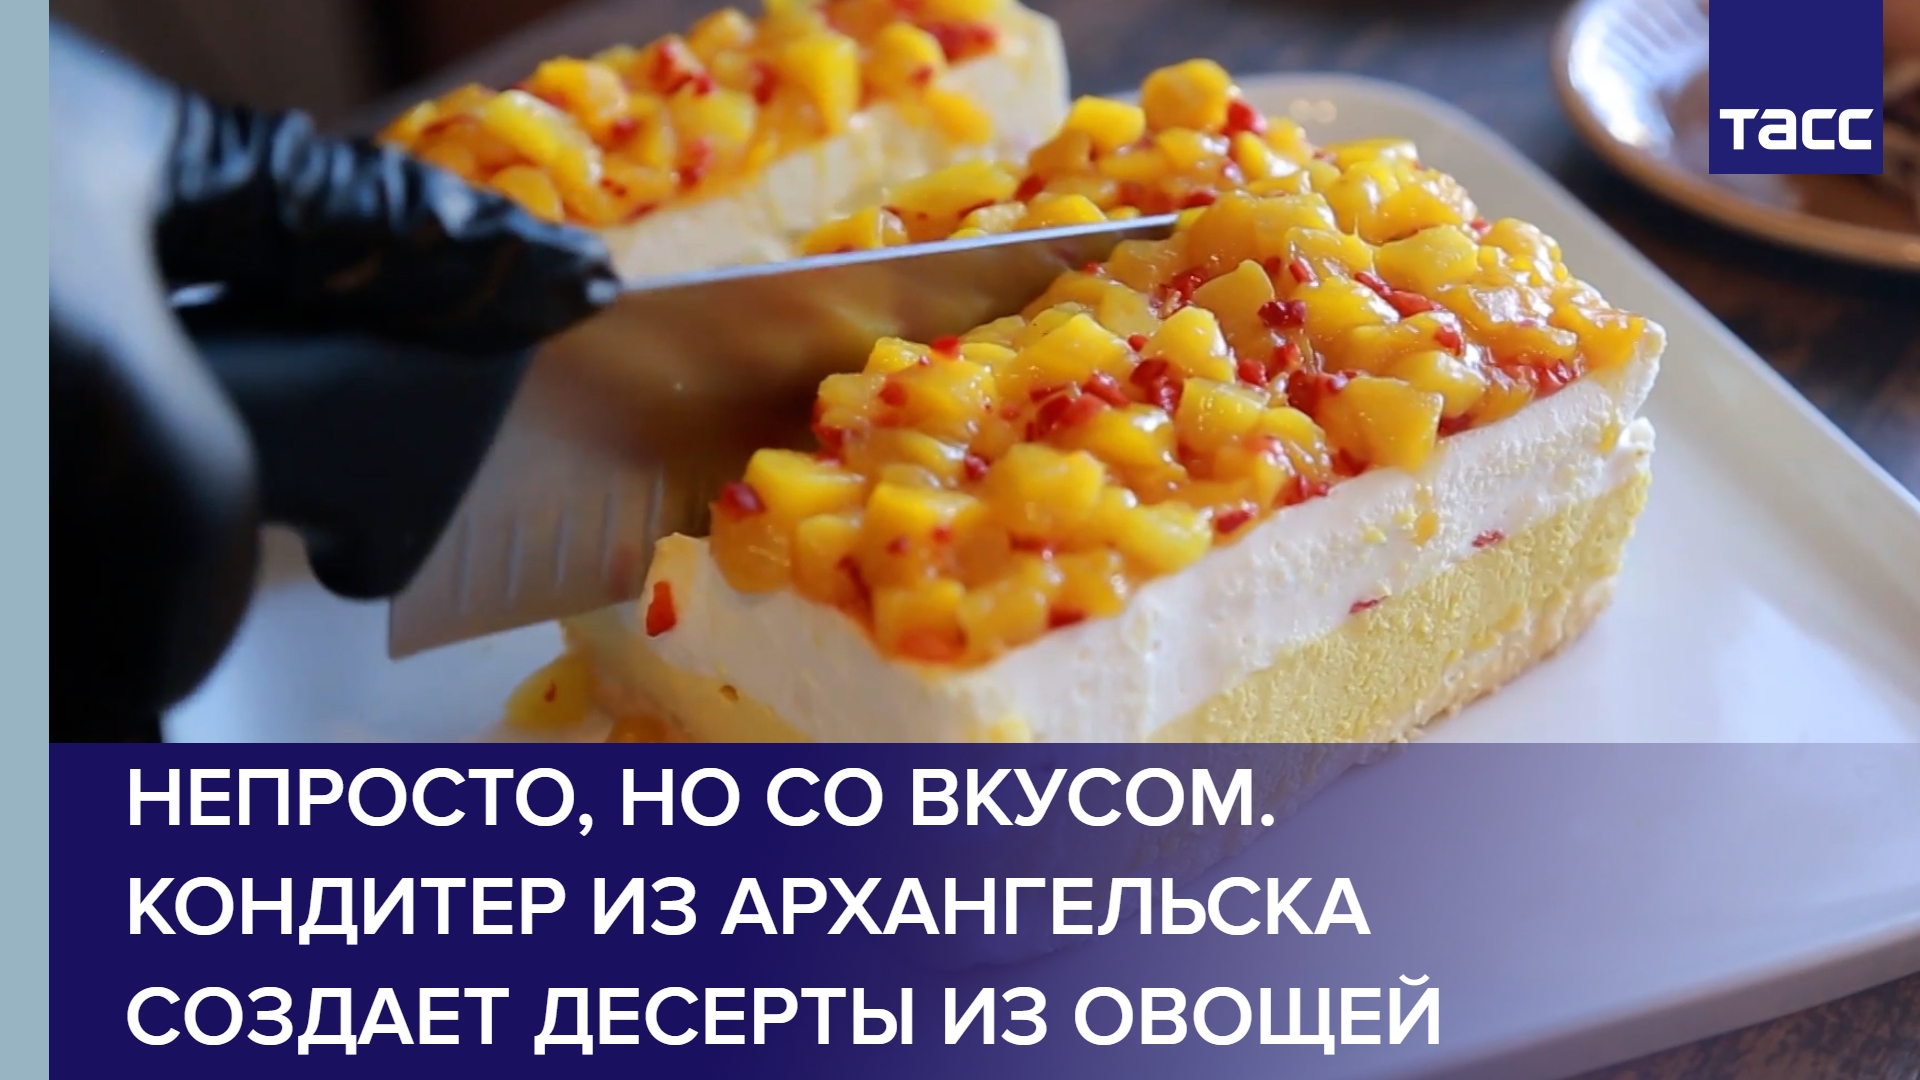 Непросто, но со вкусом. Кондитер из Архангельска создает десерты из овощей